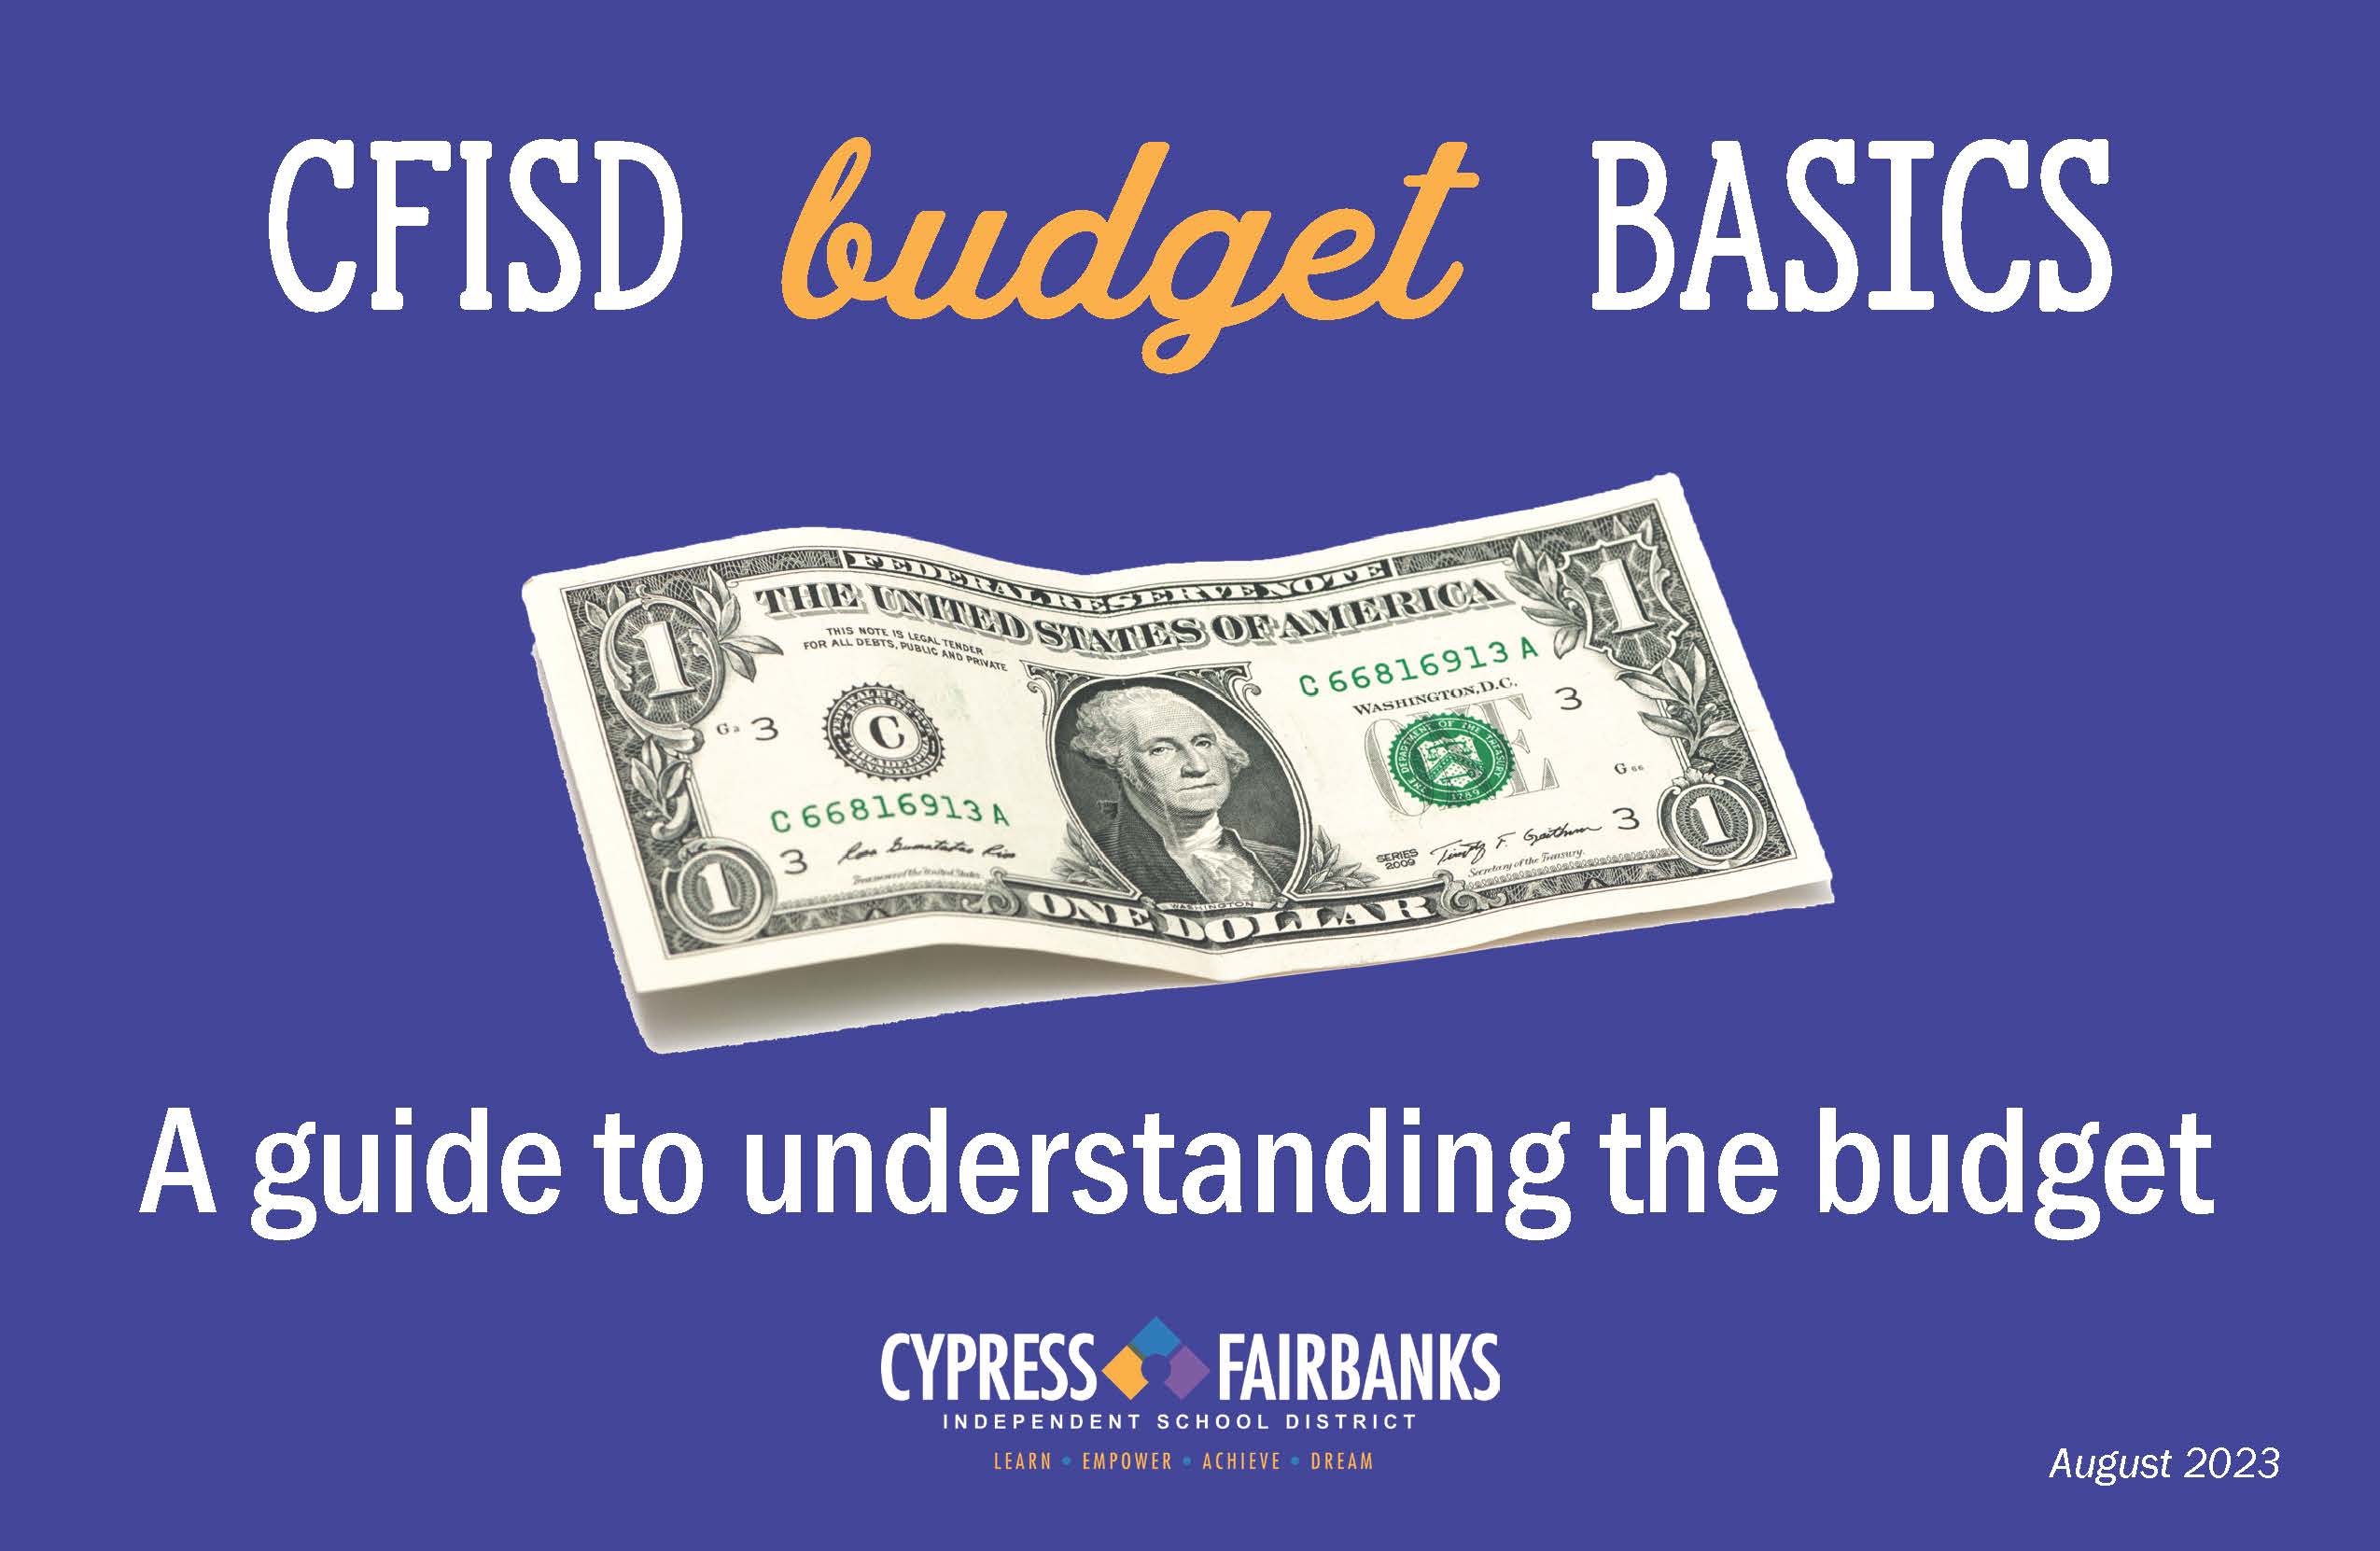 CFISD Budget Basics - A Guide to Understanding the Budtget